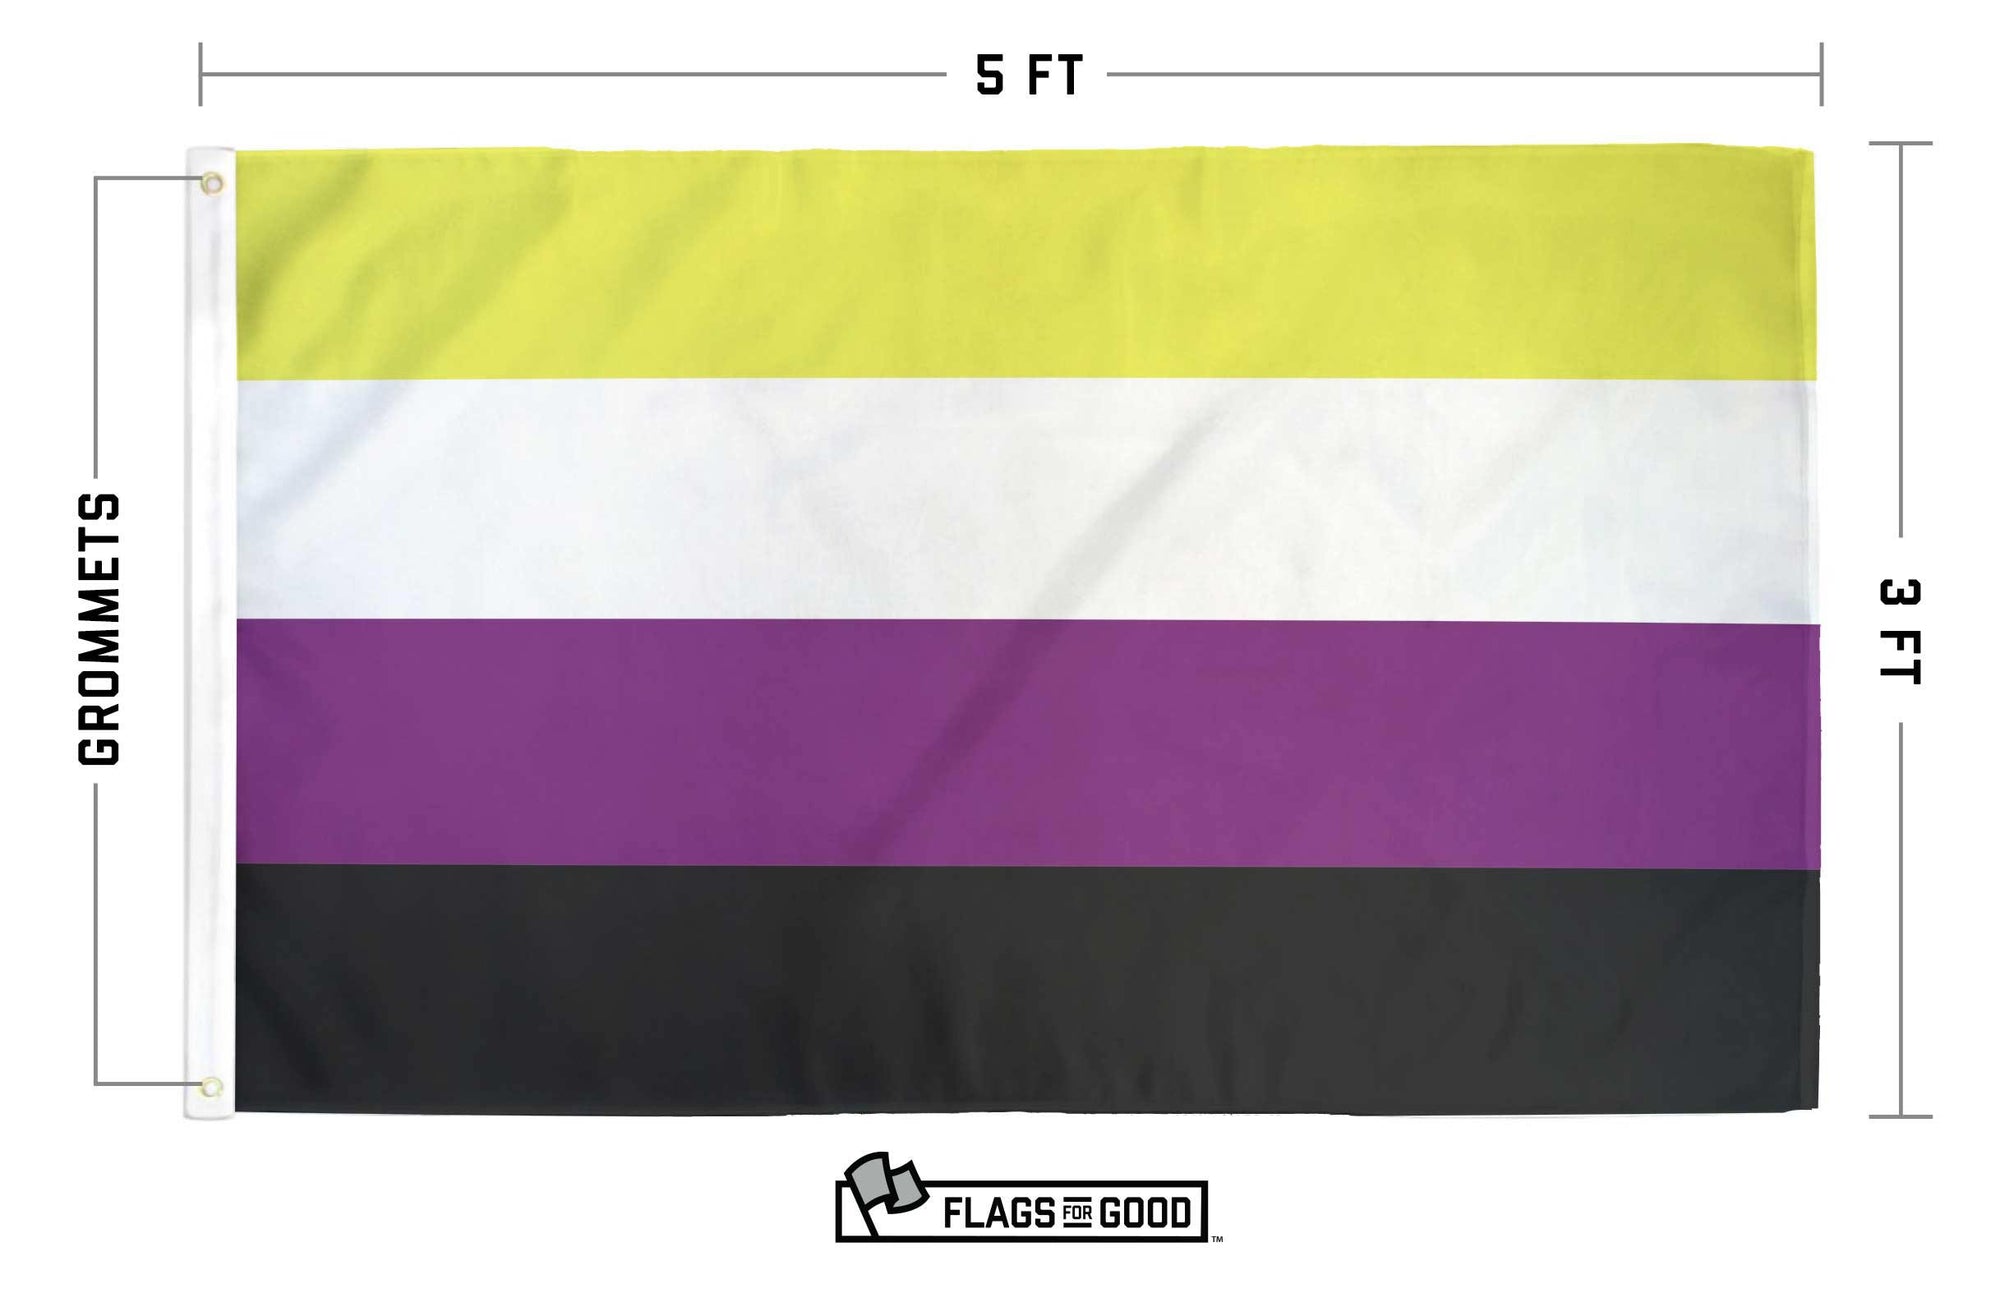 non-binary flag